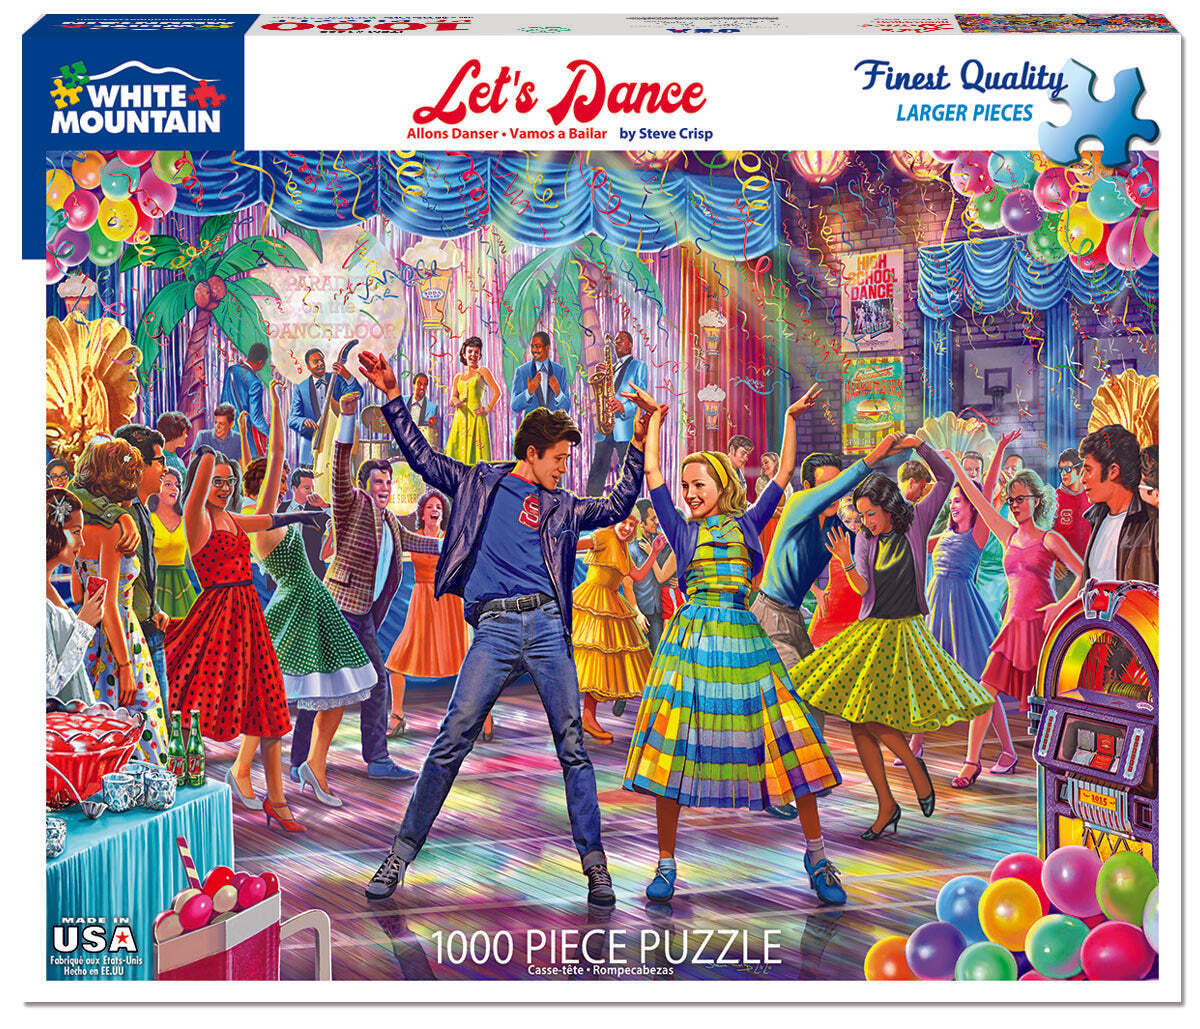 Let's Dance (1603pz) - 1000 Piece Jigsaw Puzzle